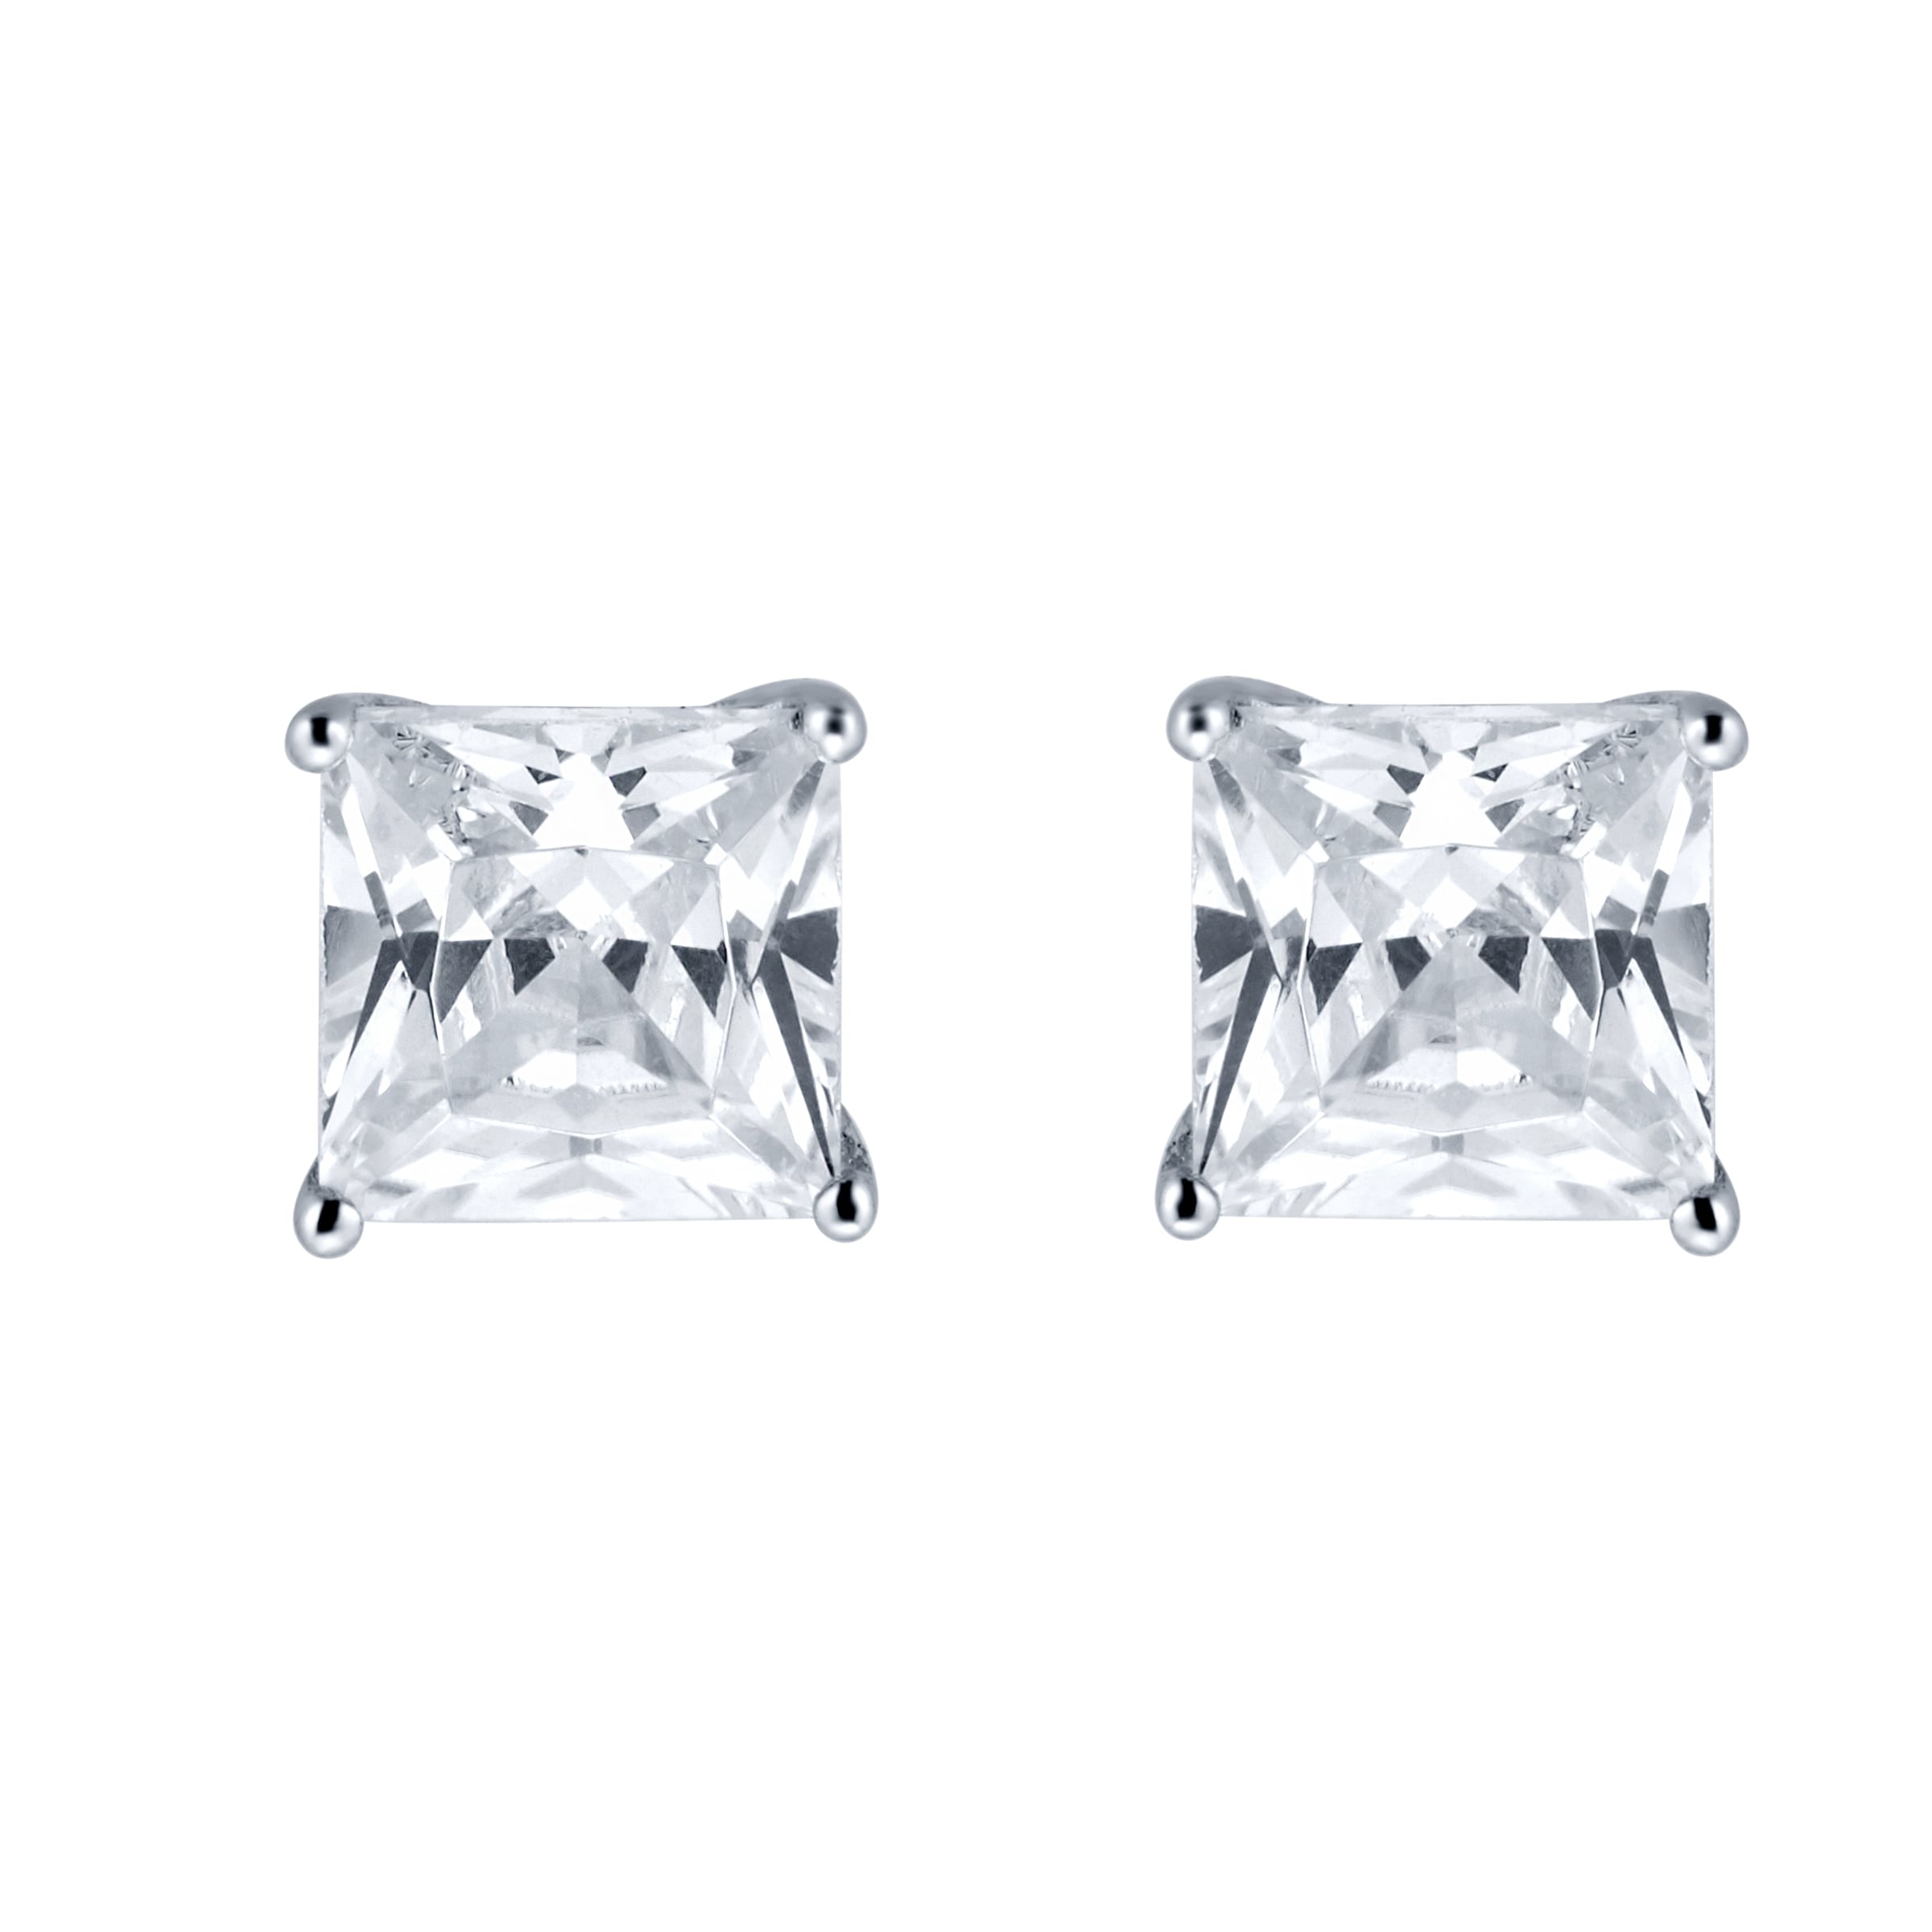 Real Diamonds Party Wear Princess Cut Diamond Stud Earrings 10 Gm 14 Kt